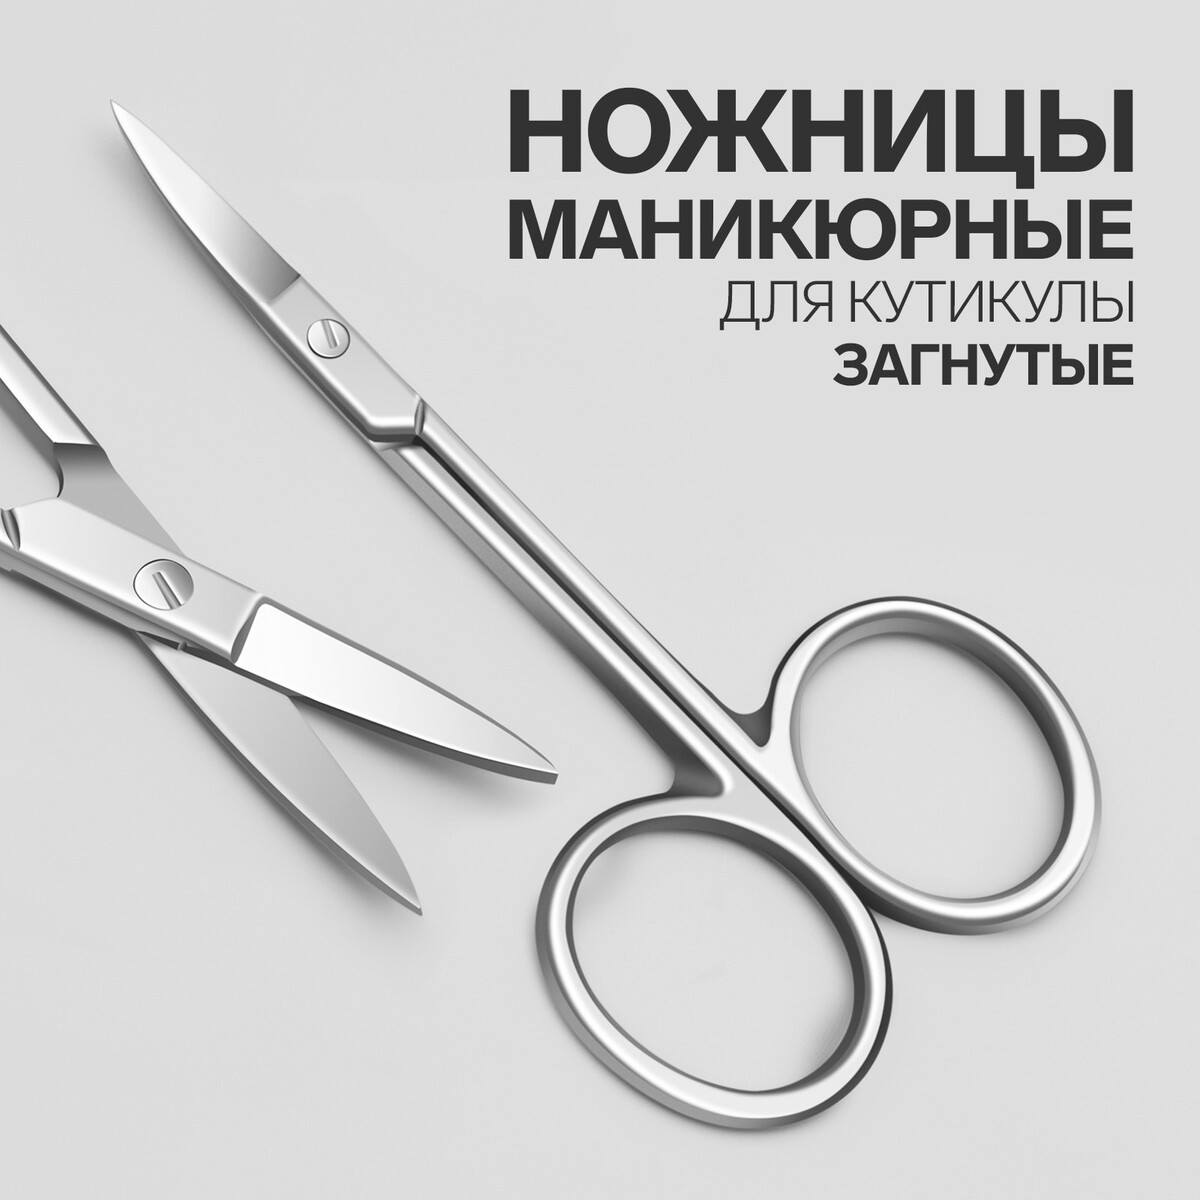 Ножницы маникюрные для кутикулы, загнутые, узкие, 9,3 см, цвет серебристый ножницы маникюрные для кутикулы загнутые узкие 9 см серебристый